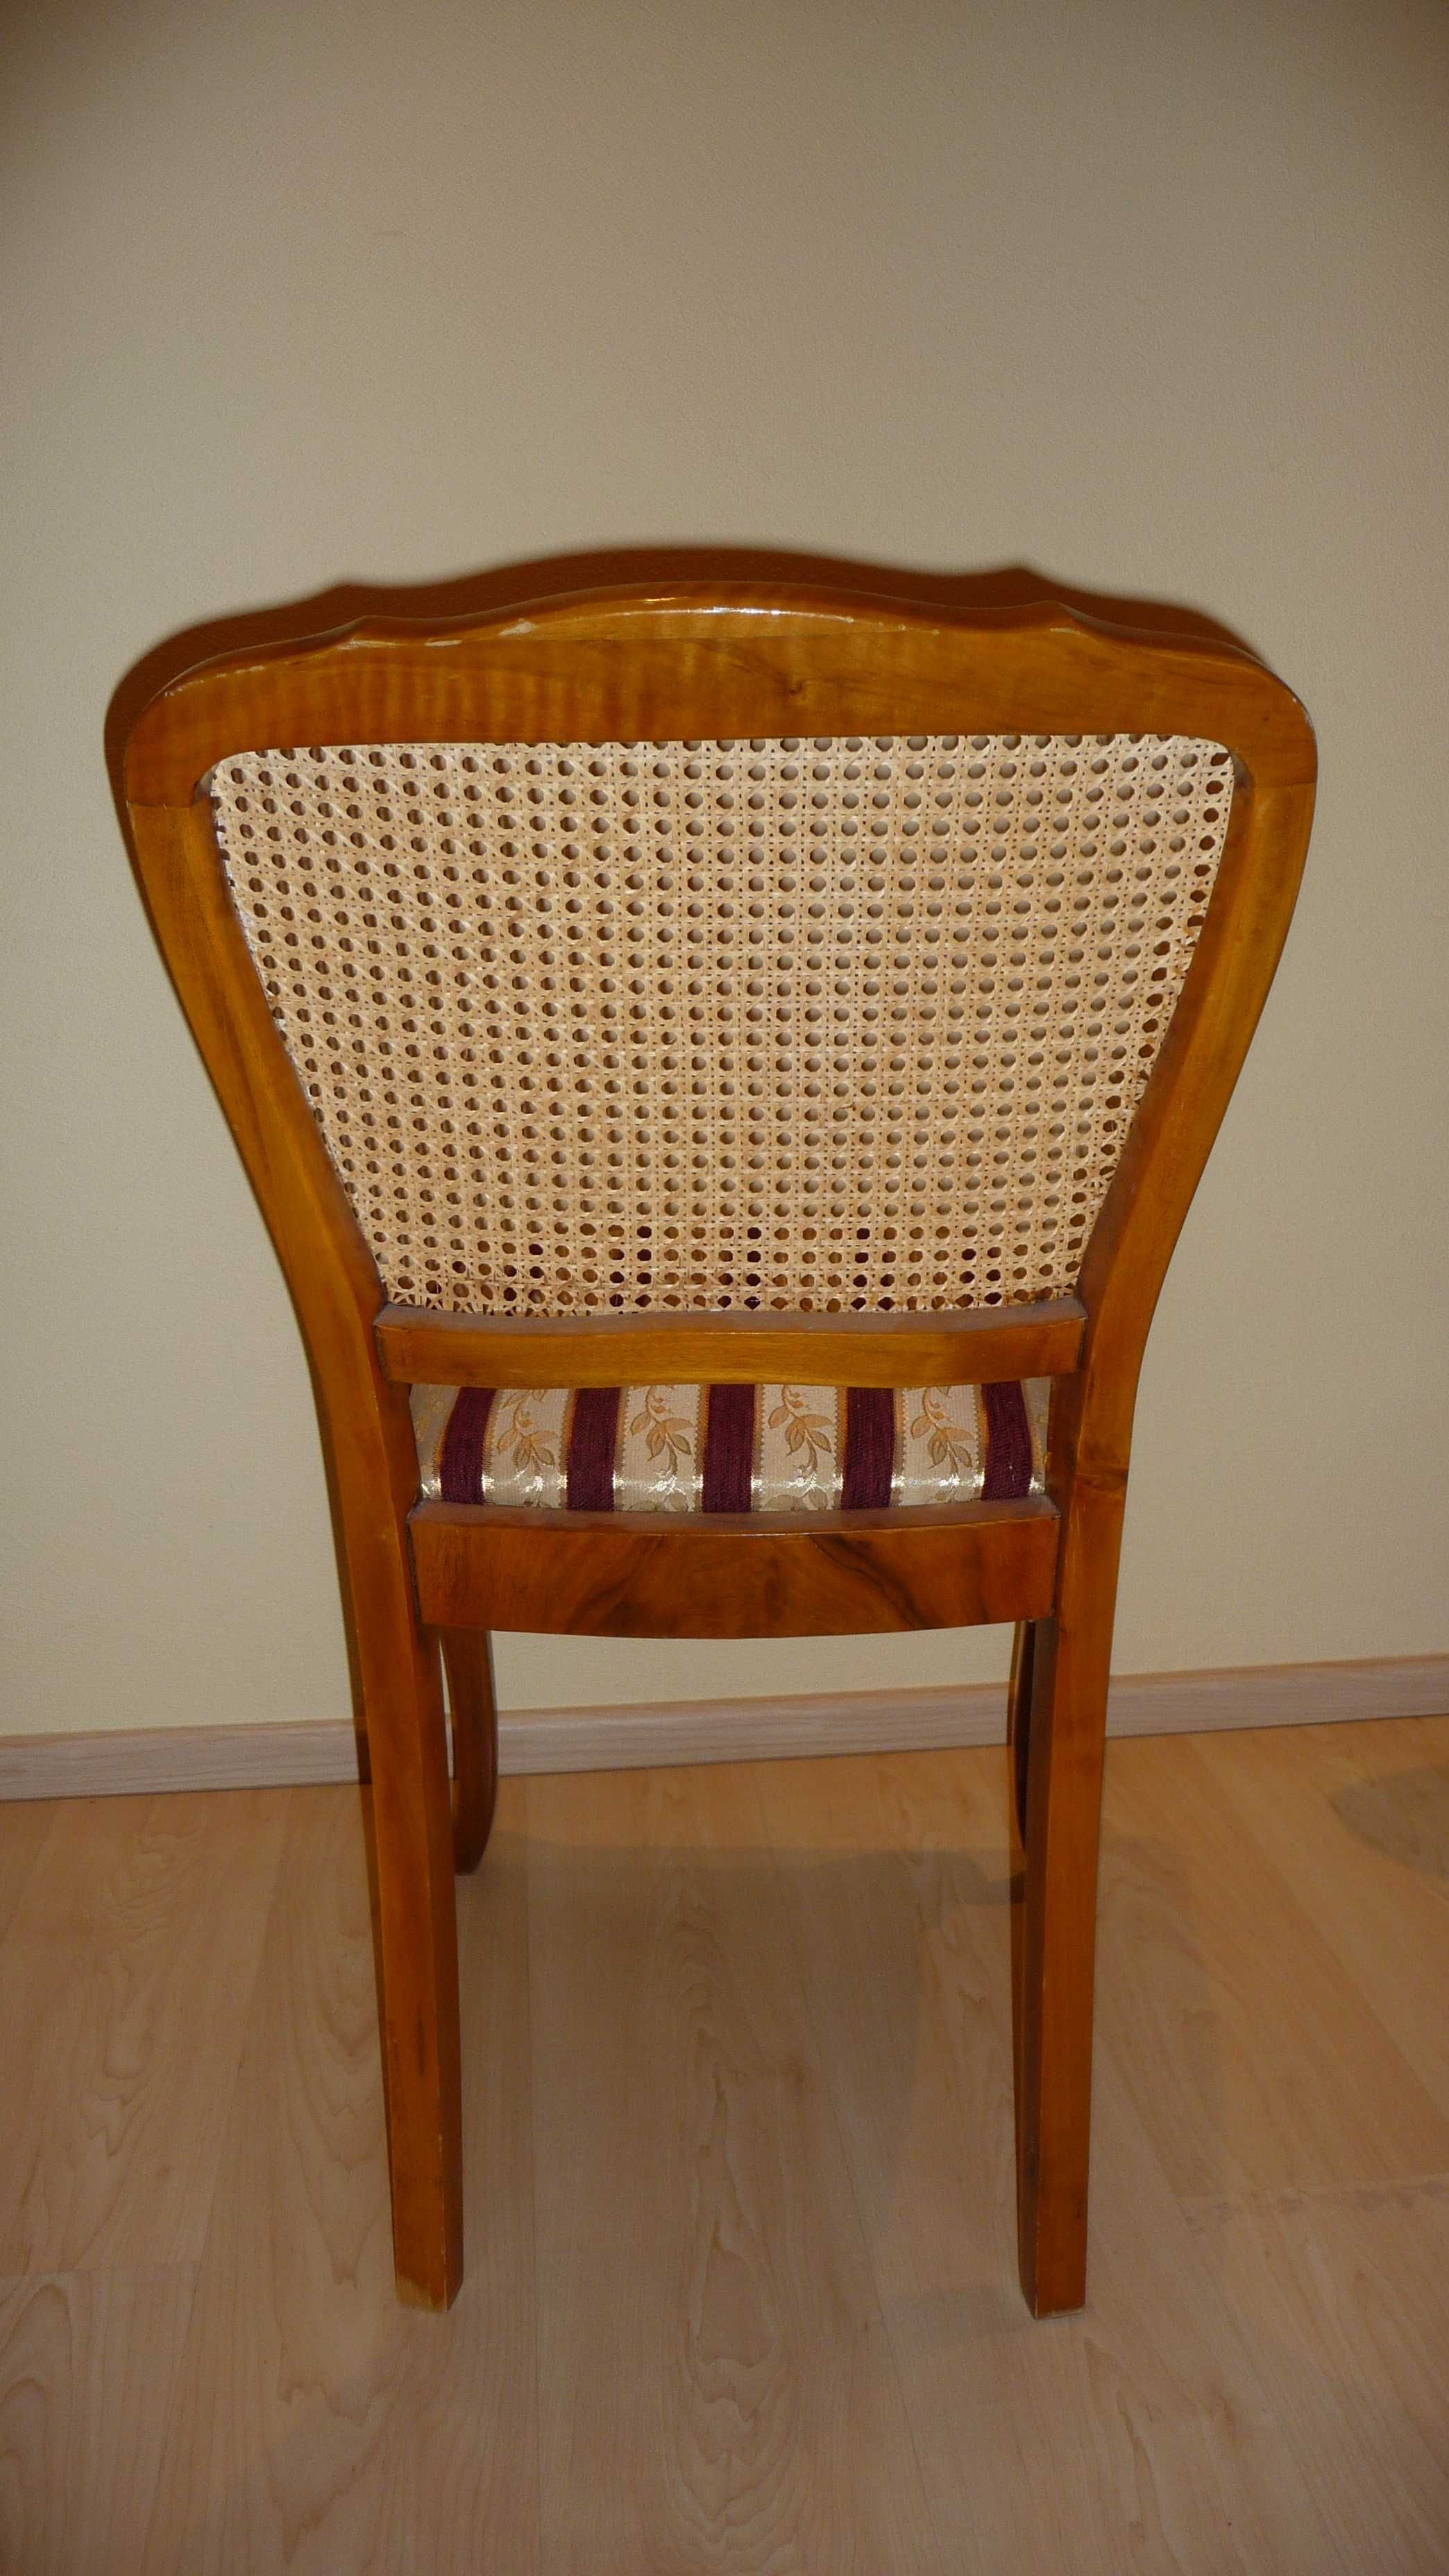 5 starych antycznych krzeseł